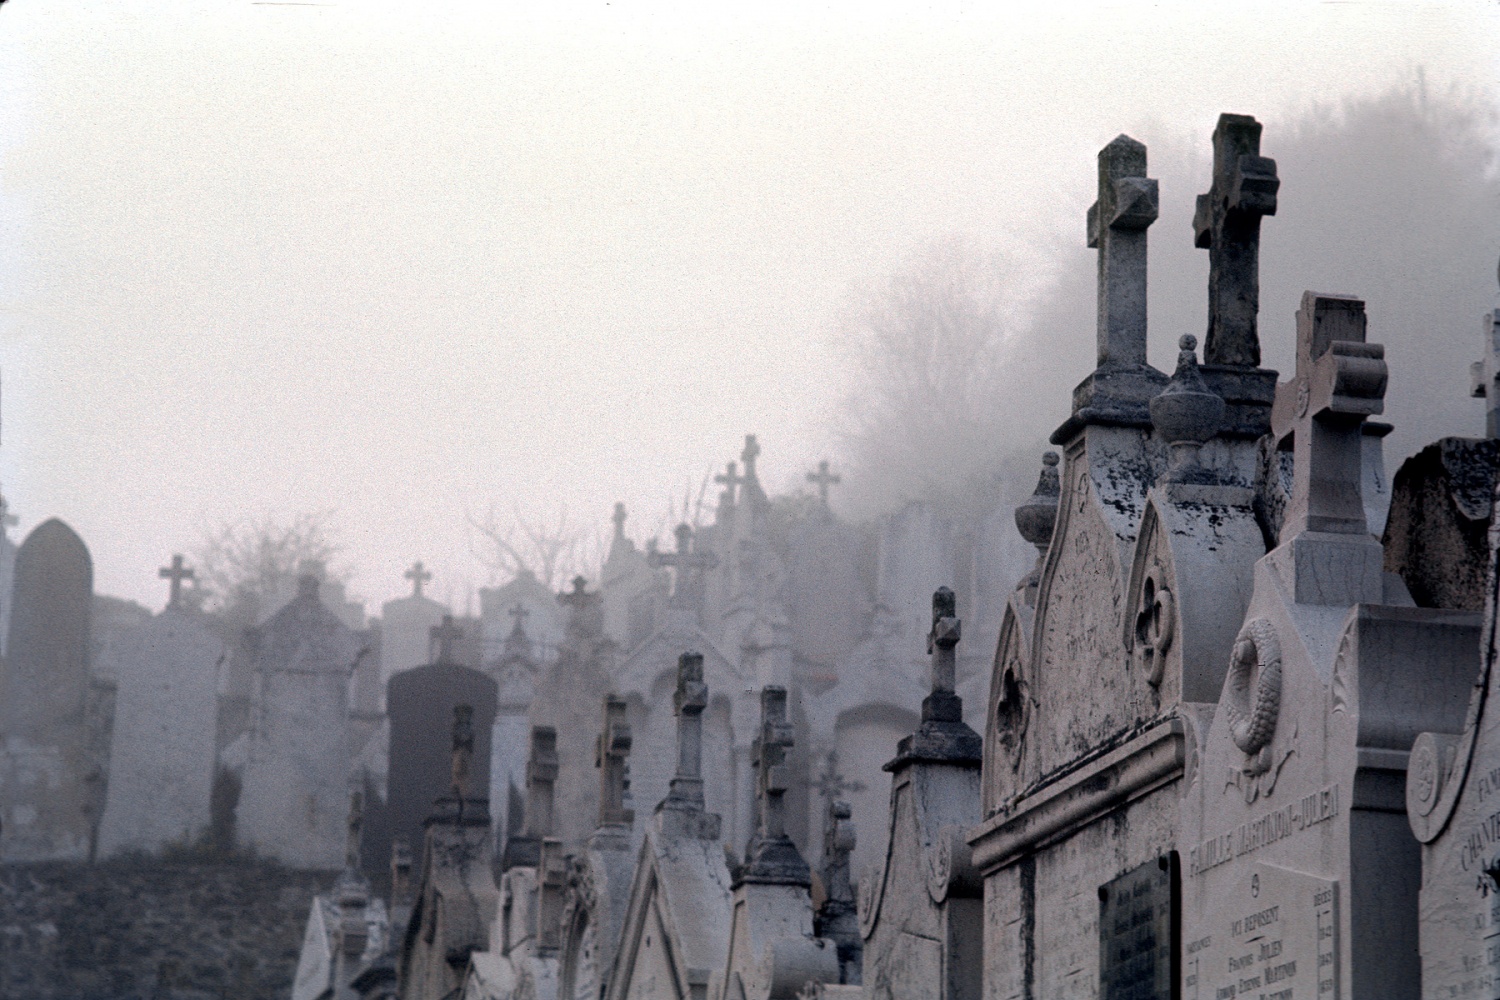 bill-hocker-cemetery-france-1972